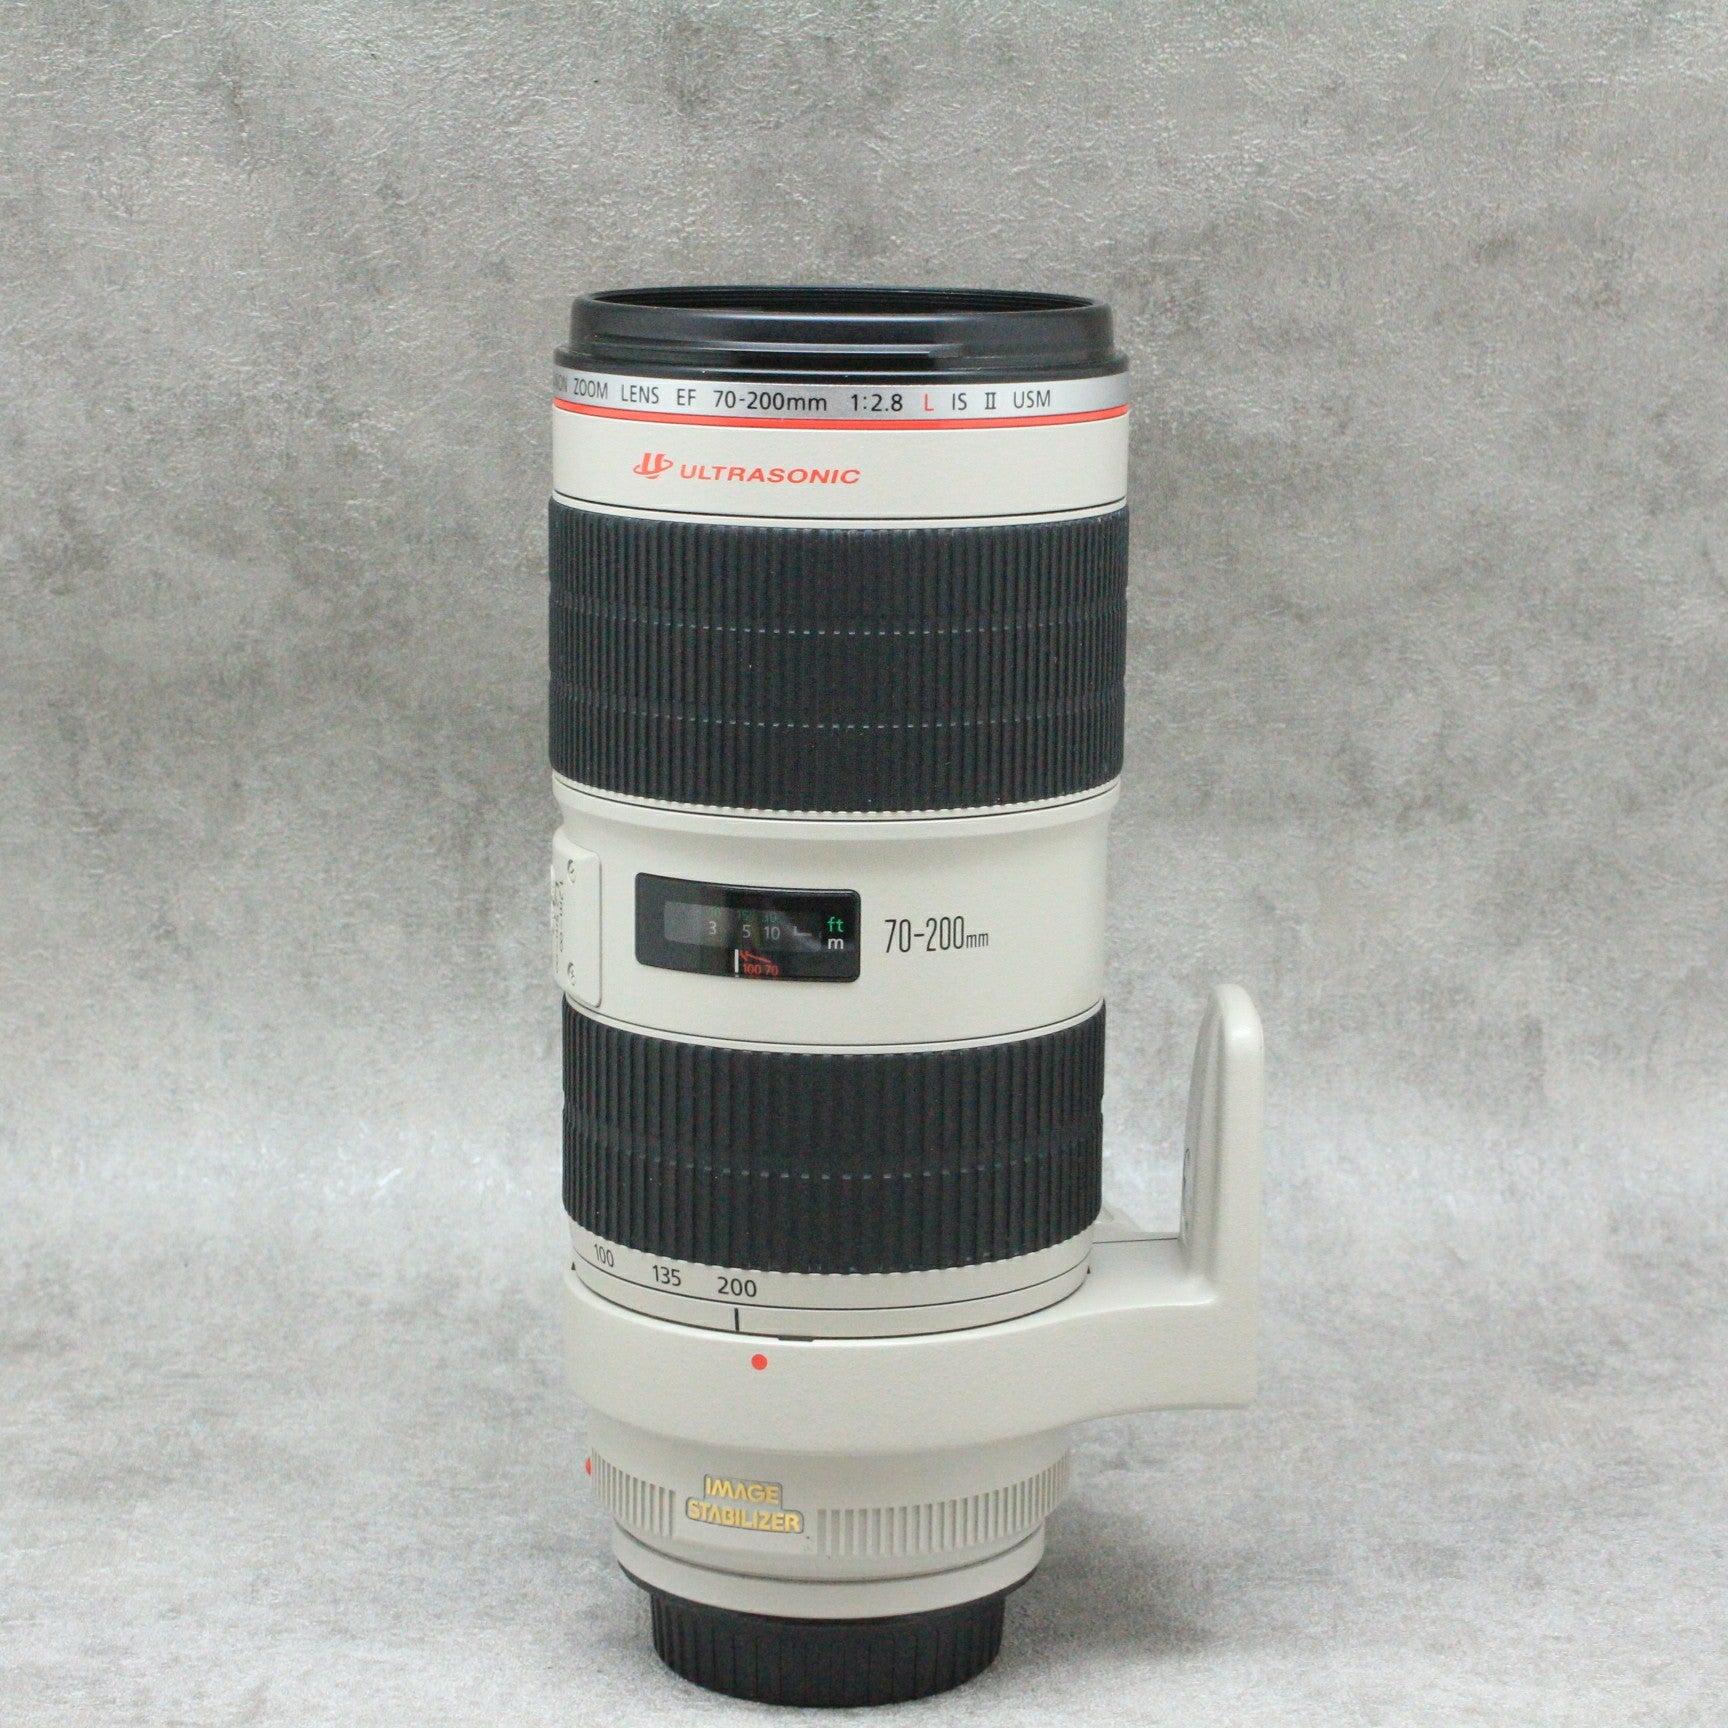 中古品 Canon EF 70-200mm F2.8L IS II USM